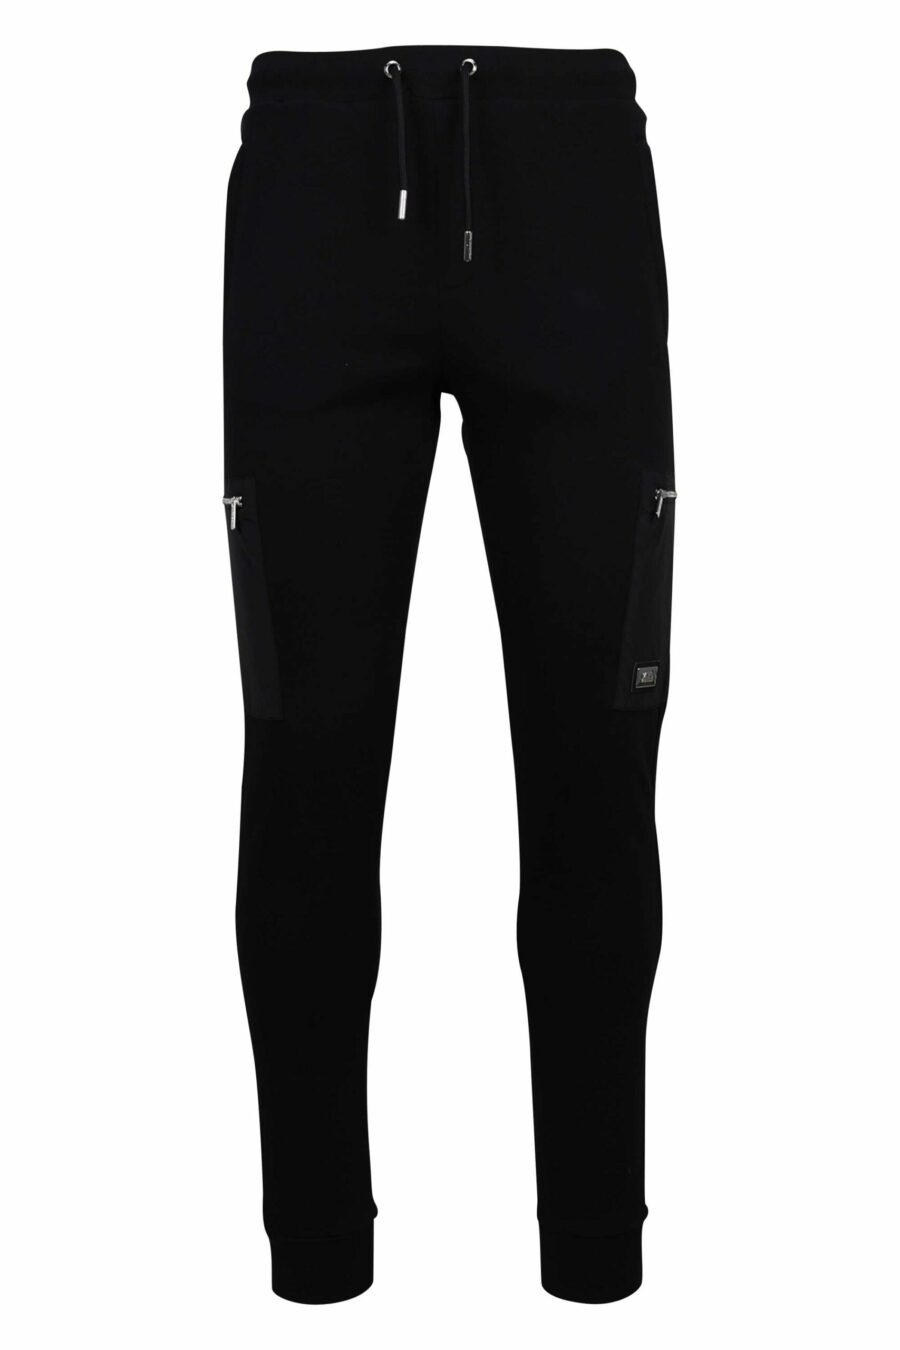 Schwarze Jogginghose mit seitlichen Reißverschlusstaschen - 4062226654265 1 skaliert